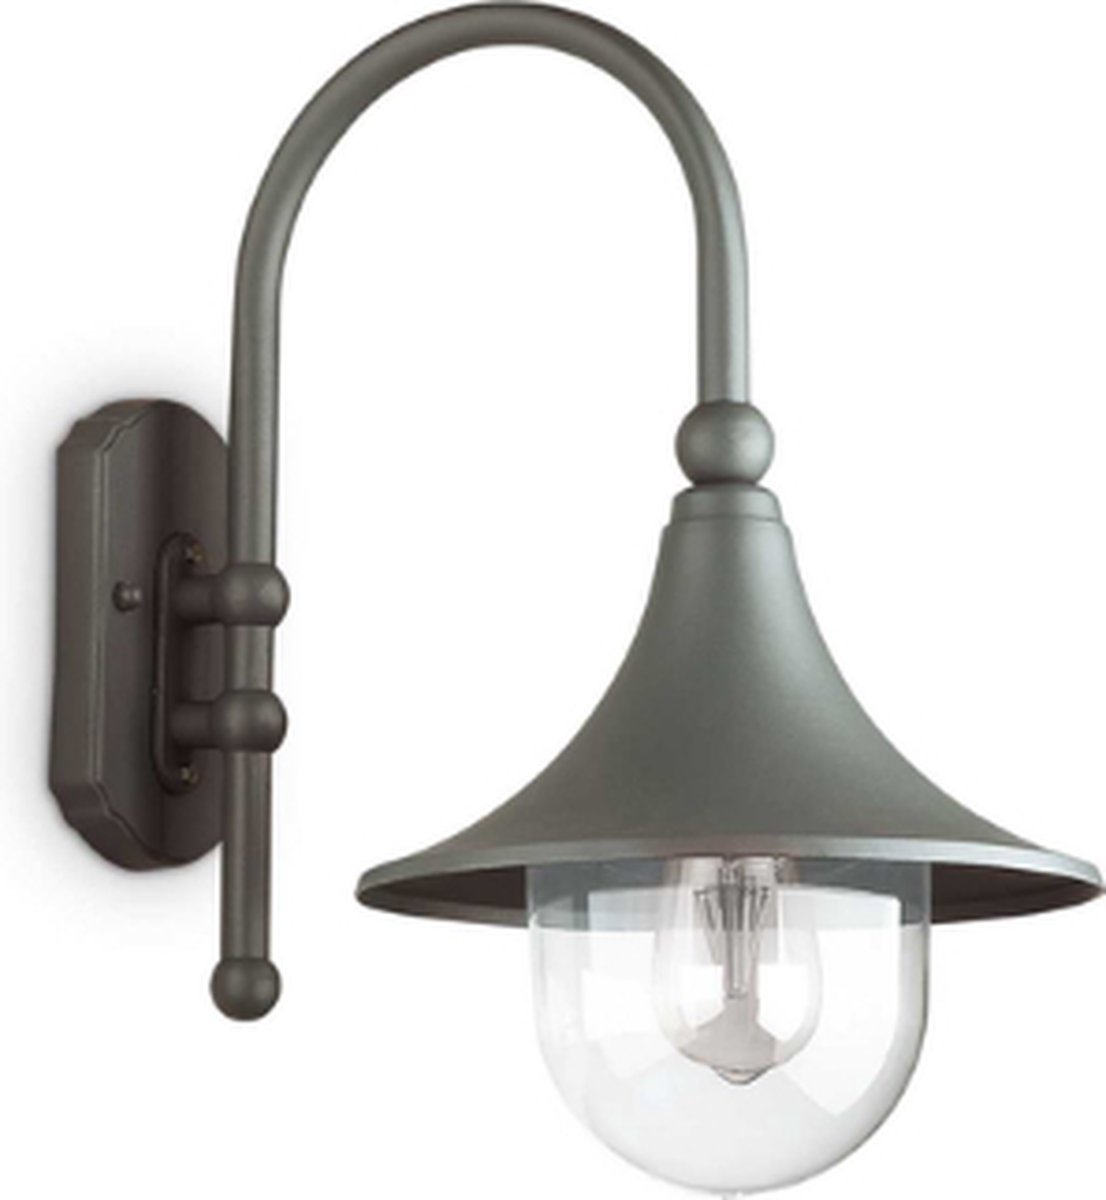 Ideal Lux - Cima - Wandlamp - Metaal - E27 - Grijs - Voor binnen - Lampen - Woonkamer - Eetkamer - Keuken